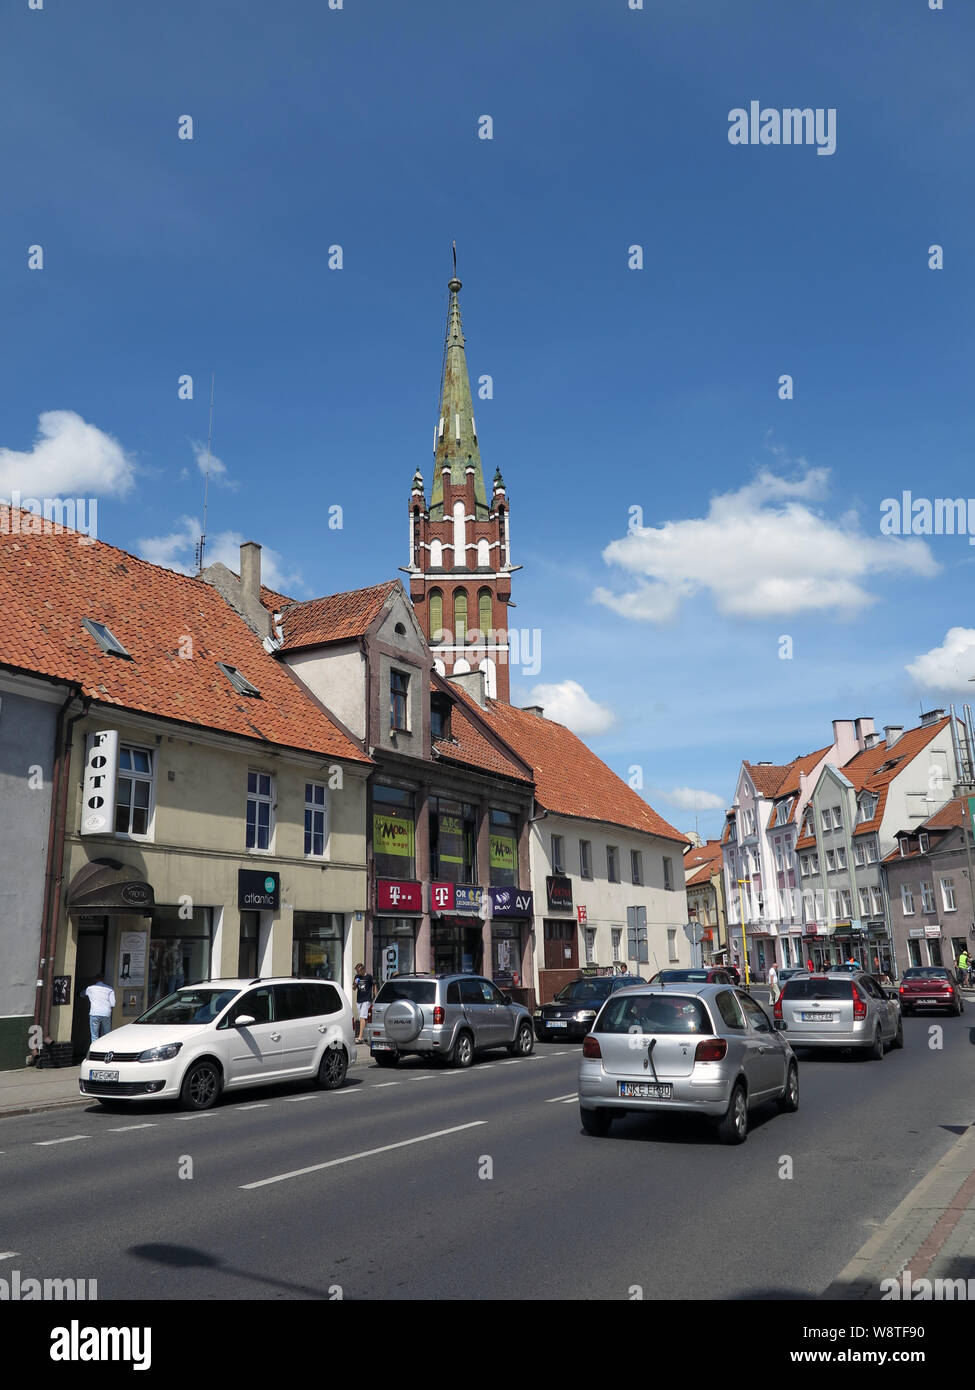 Vue des citoyens' maisons de la ville de Ketrzyn (Rastenburg) dans la Mazurie polonaise (anciennement Ostpreussen) - dans l'arrière-plan l'église néo-gothique de Saint Katharina, enregistrée sur l'utilisation dans le monde entier 15.07.2019 | Banque D'Images